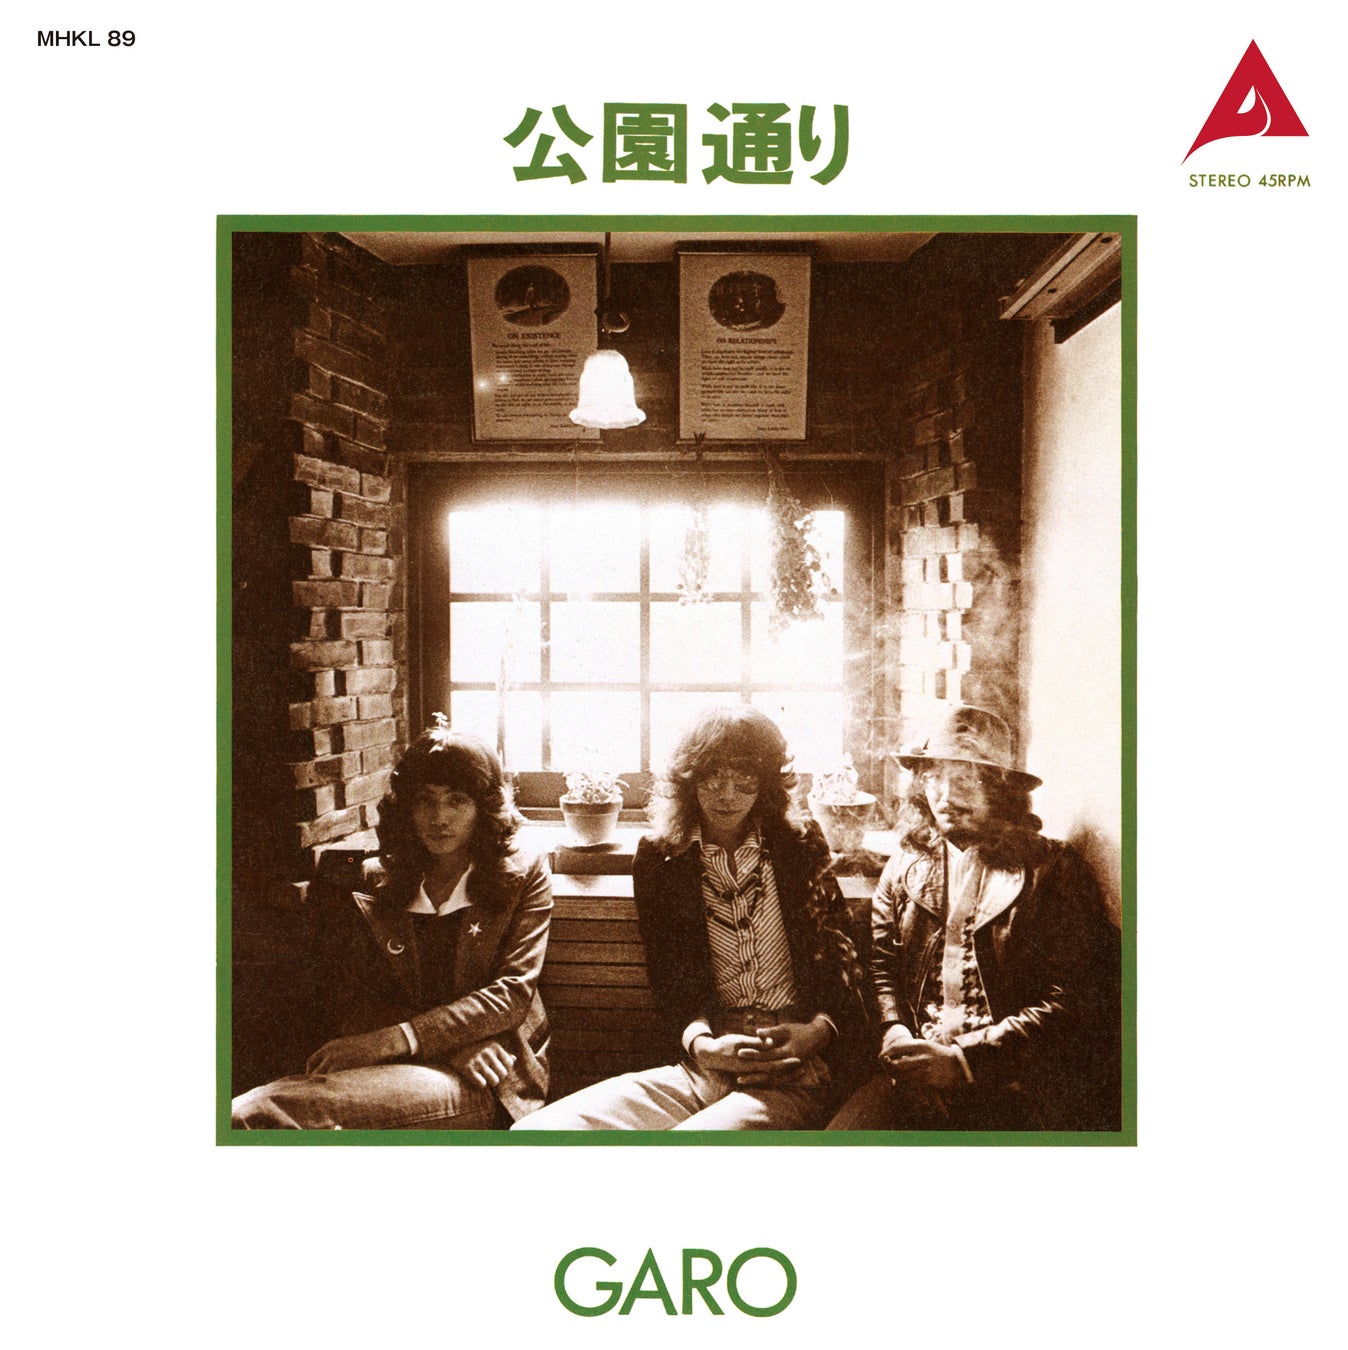 ガロ、幻のシングル「公園通り」、渋谷パルコ開業記念プロモ・オンリー盤がアルファミュージック創立55周年プロジェクト“ALFA55”として、初の正規7インチシングル発売決定！